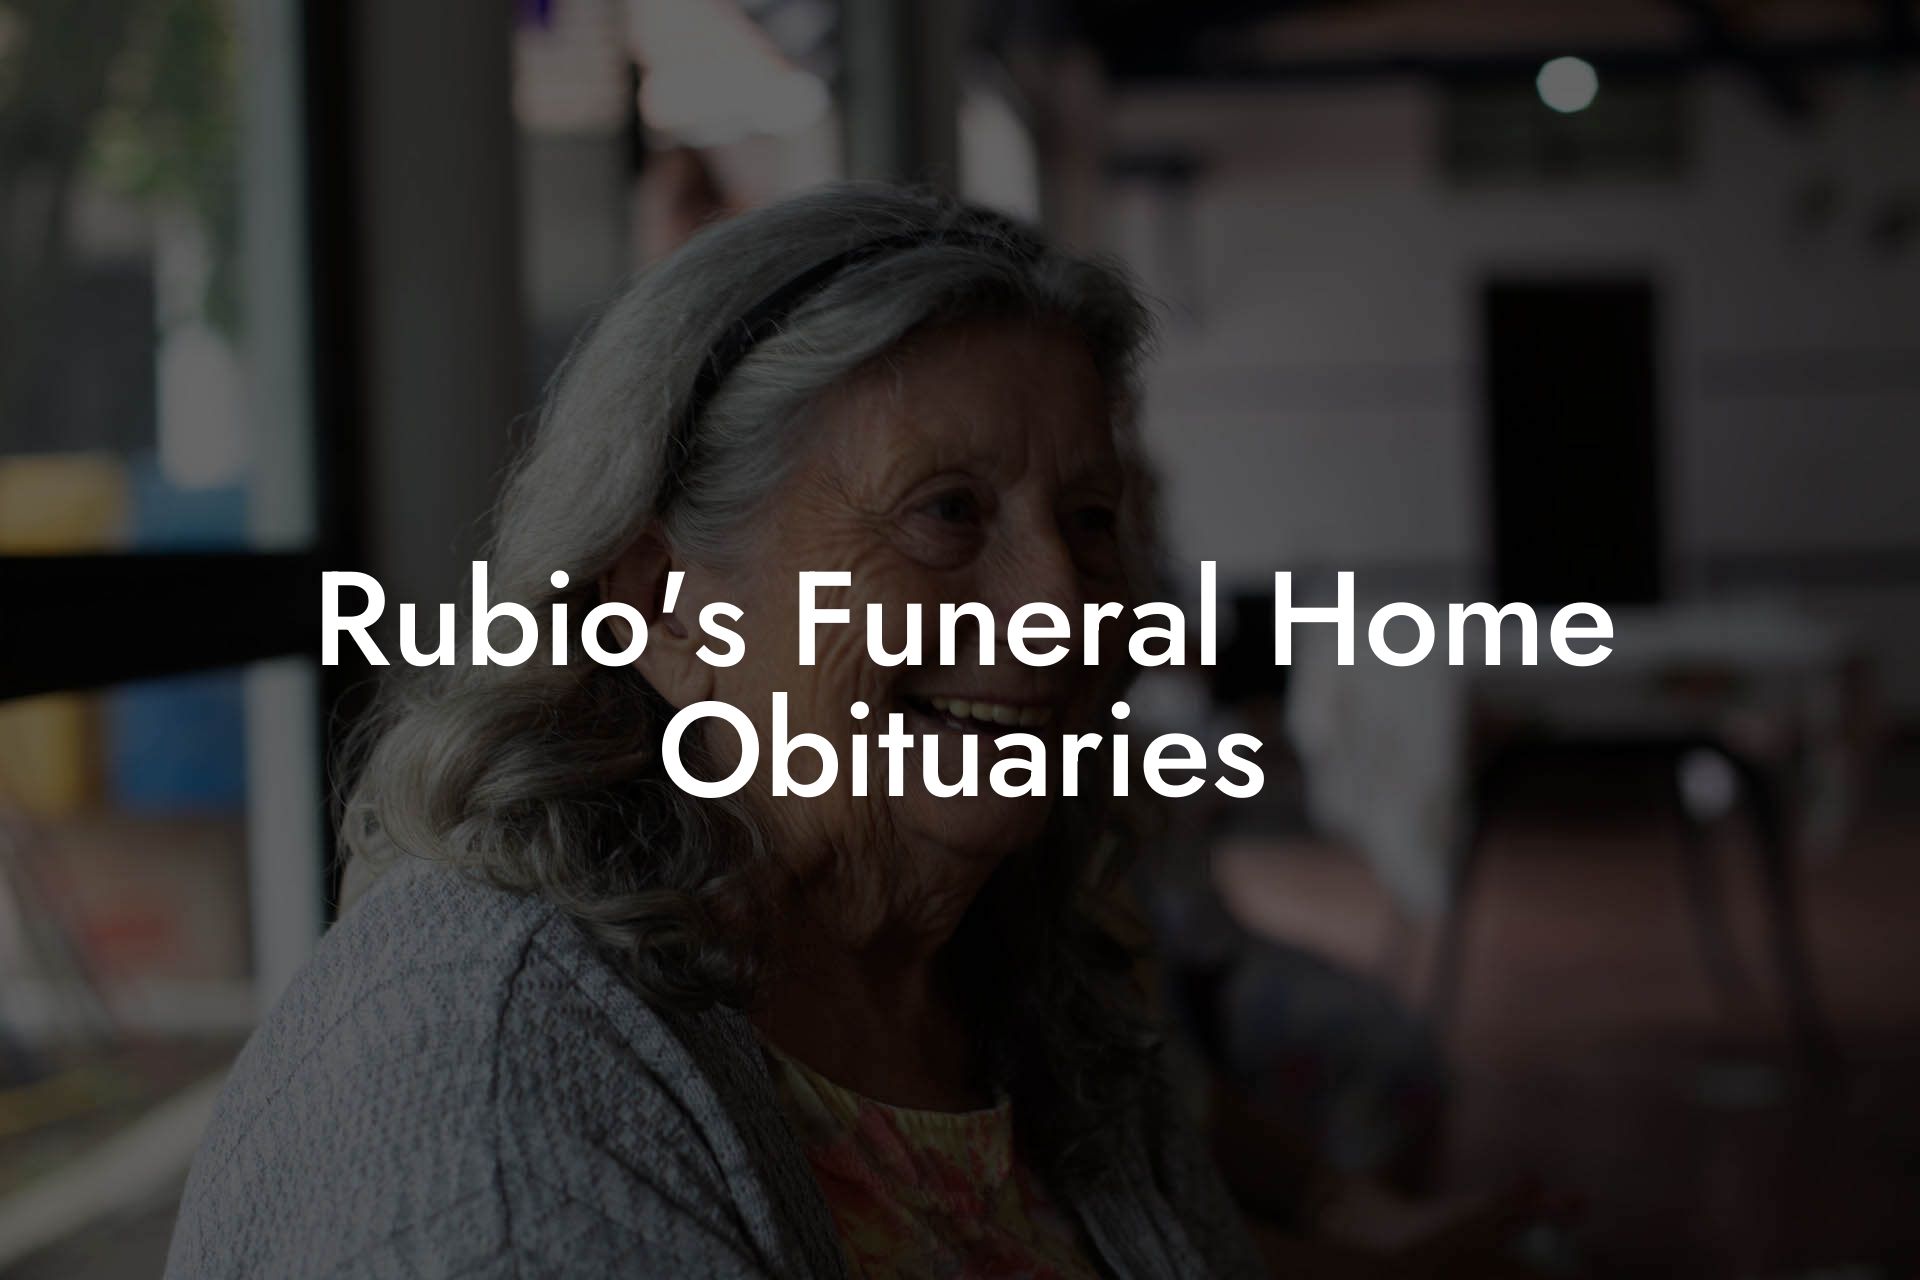 Rubio's Funeral Home Obituaries